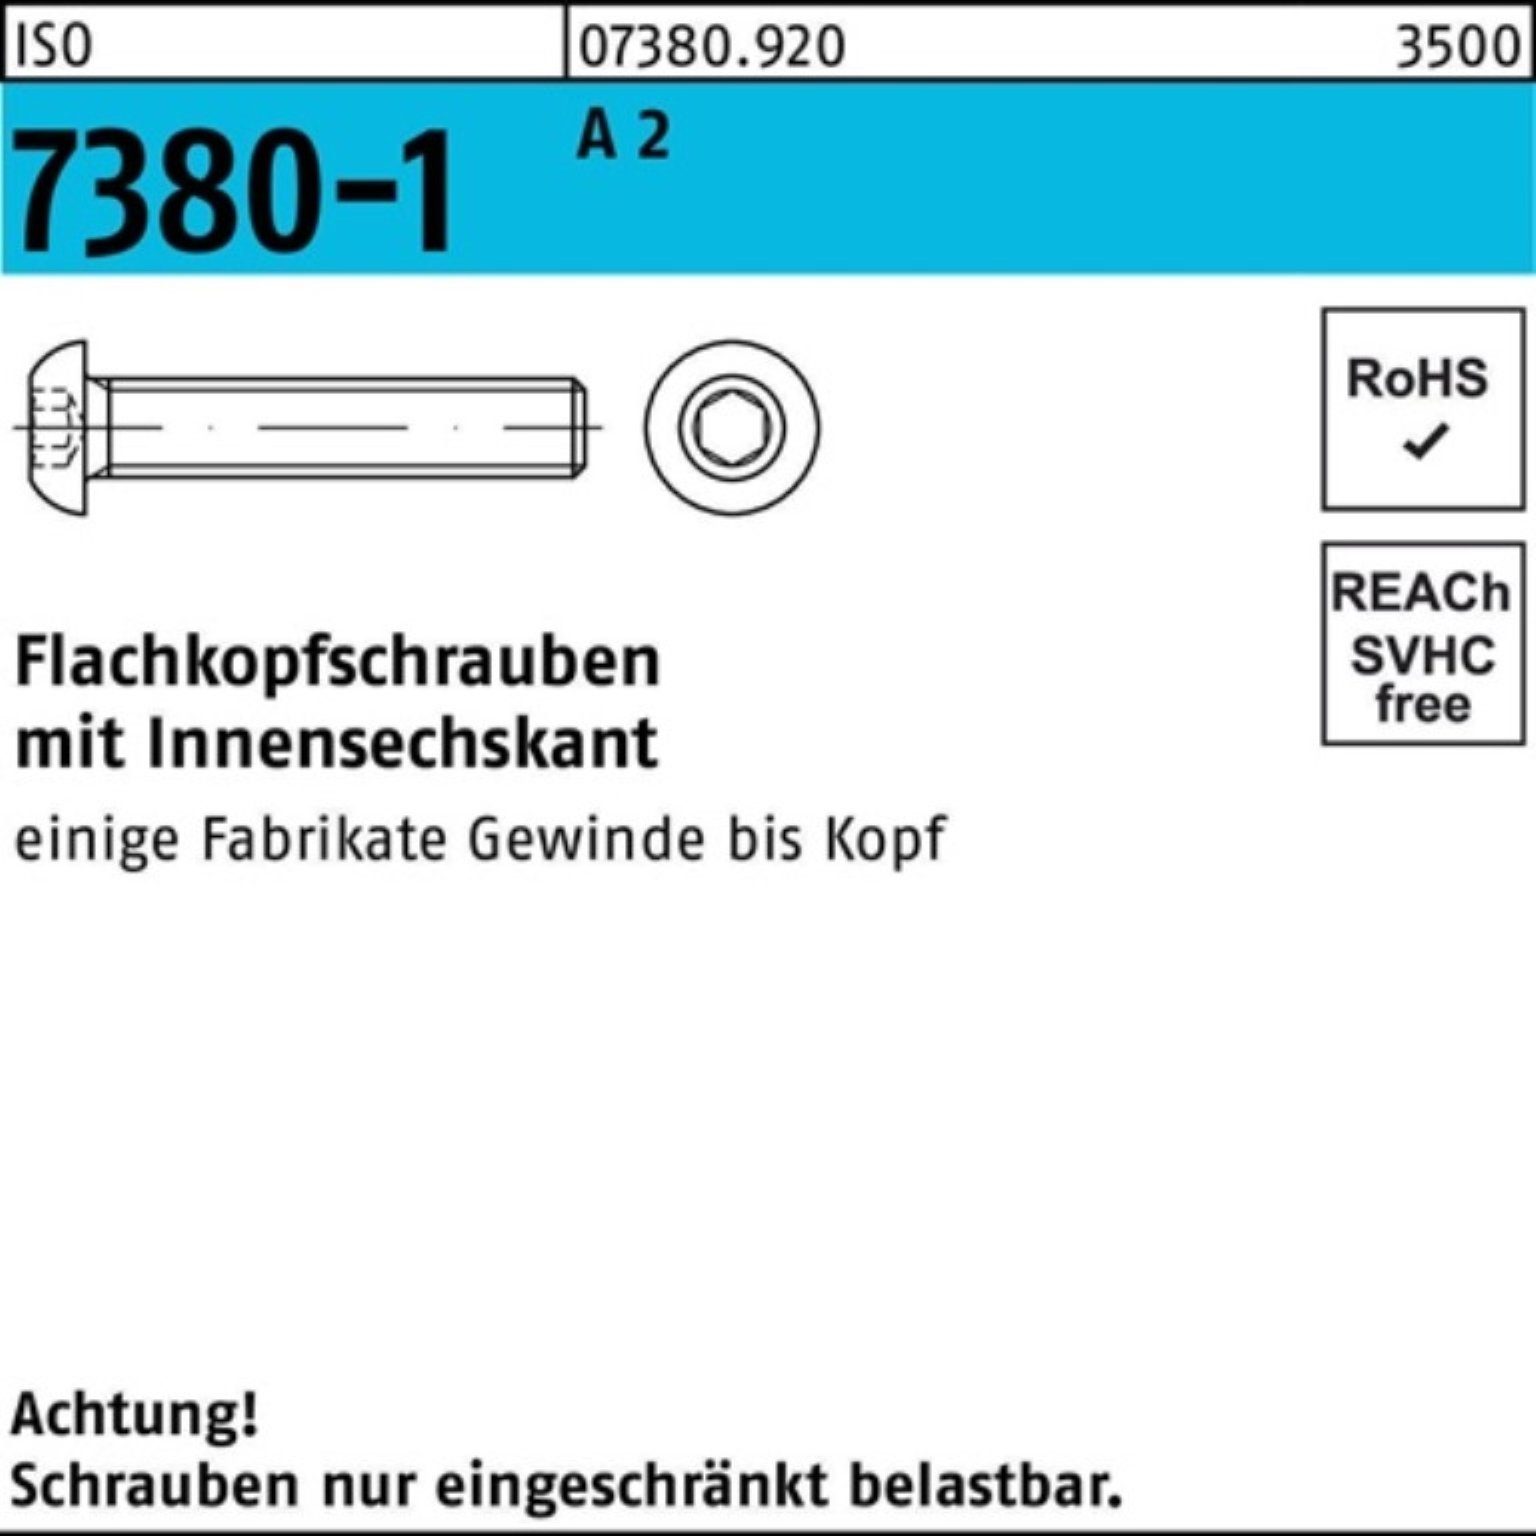 Innen-6kt Pack 2 A Schraube Flachkopfschraube 7380-1 500 500er Stüc 25 M6x Reyher ISO